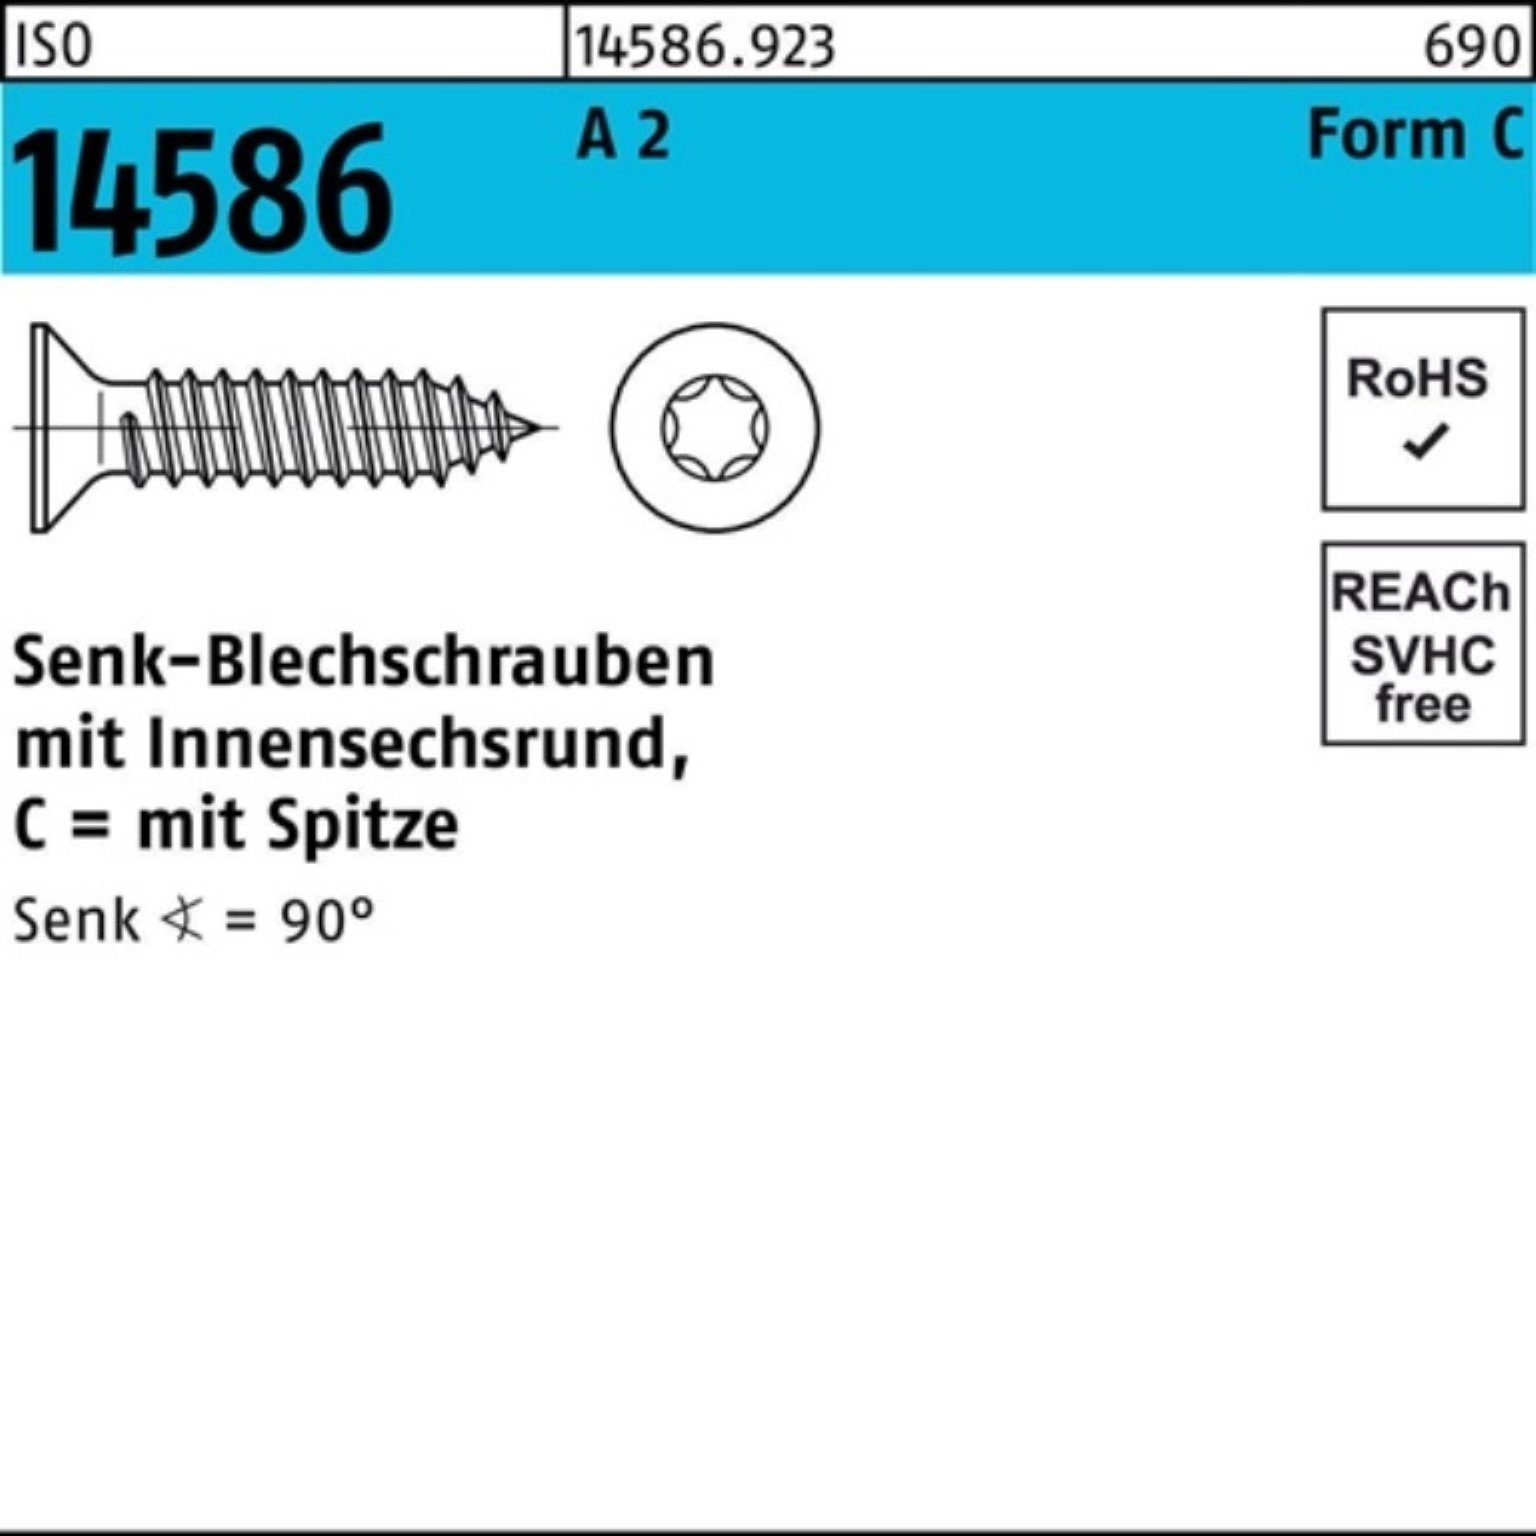 Reyher Schraube 500er Pack Senkblechschraube ISO 14586 ISR/Spitze 5,5x 19 -C T25 A 2 5